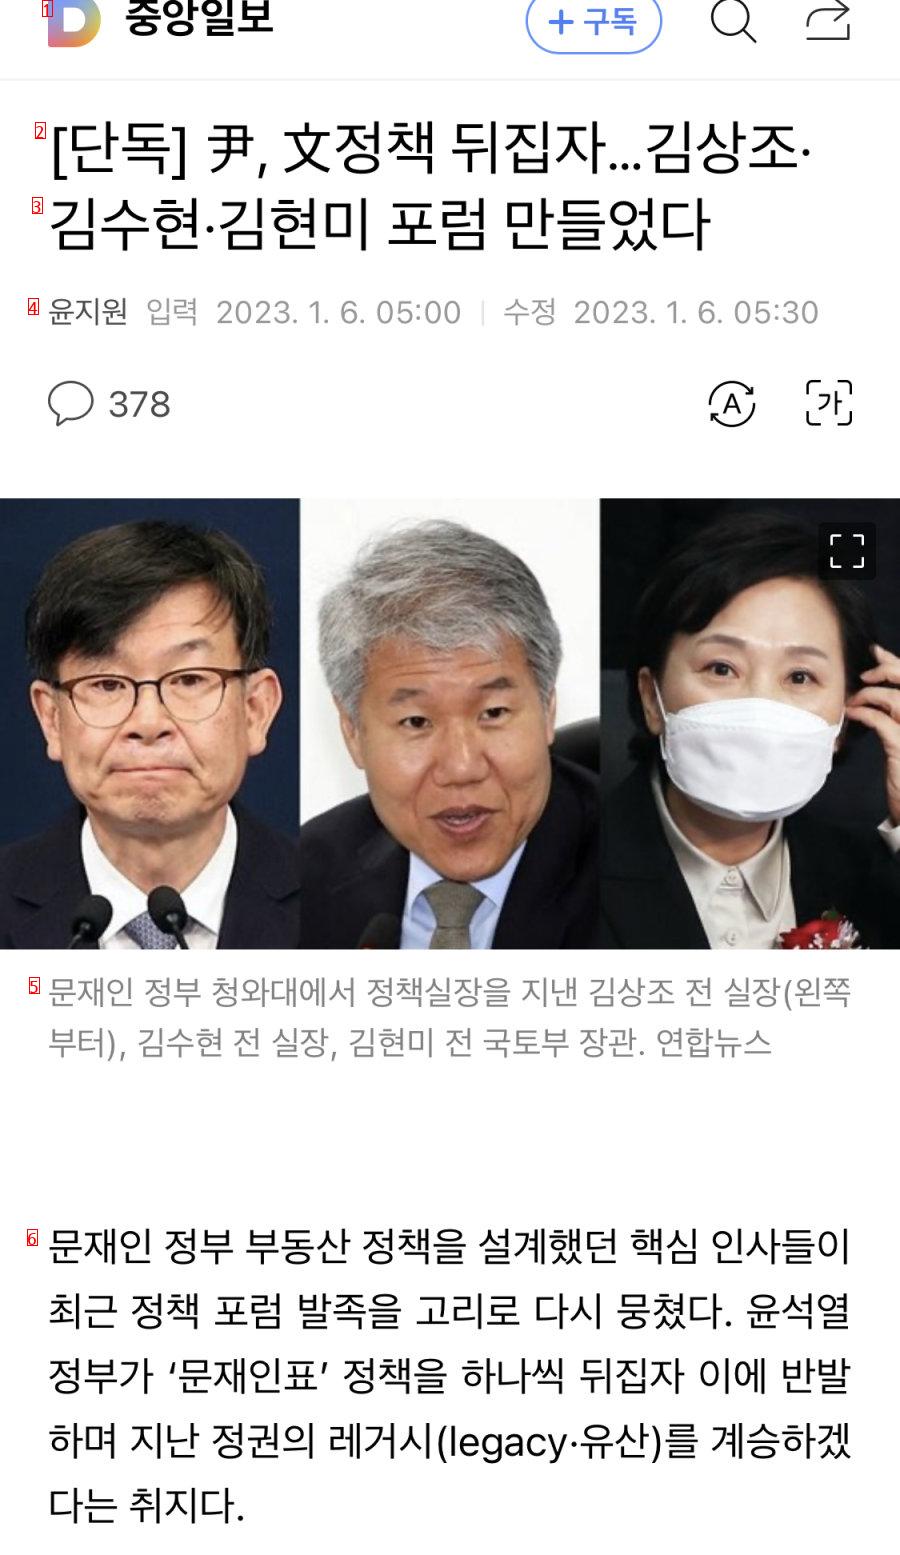 [단독] 尹, 文정책 뒤집자…김상조·김수현·김현미 포럼 만들었다